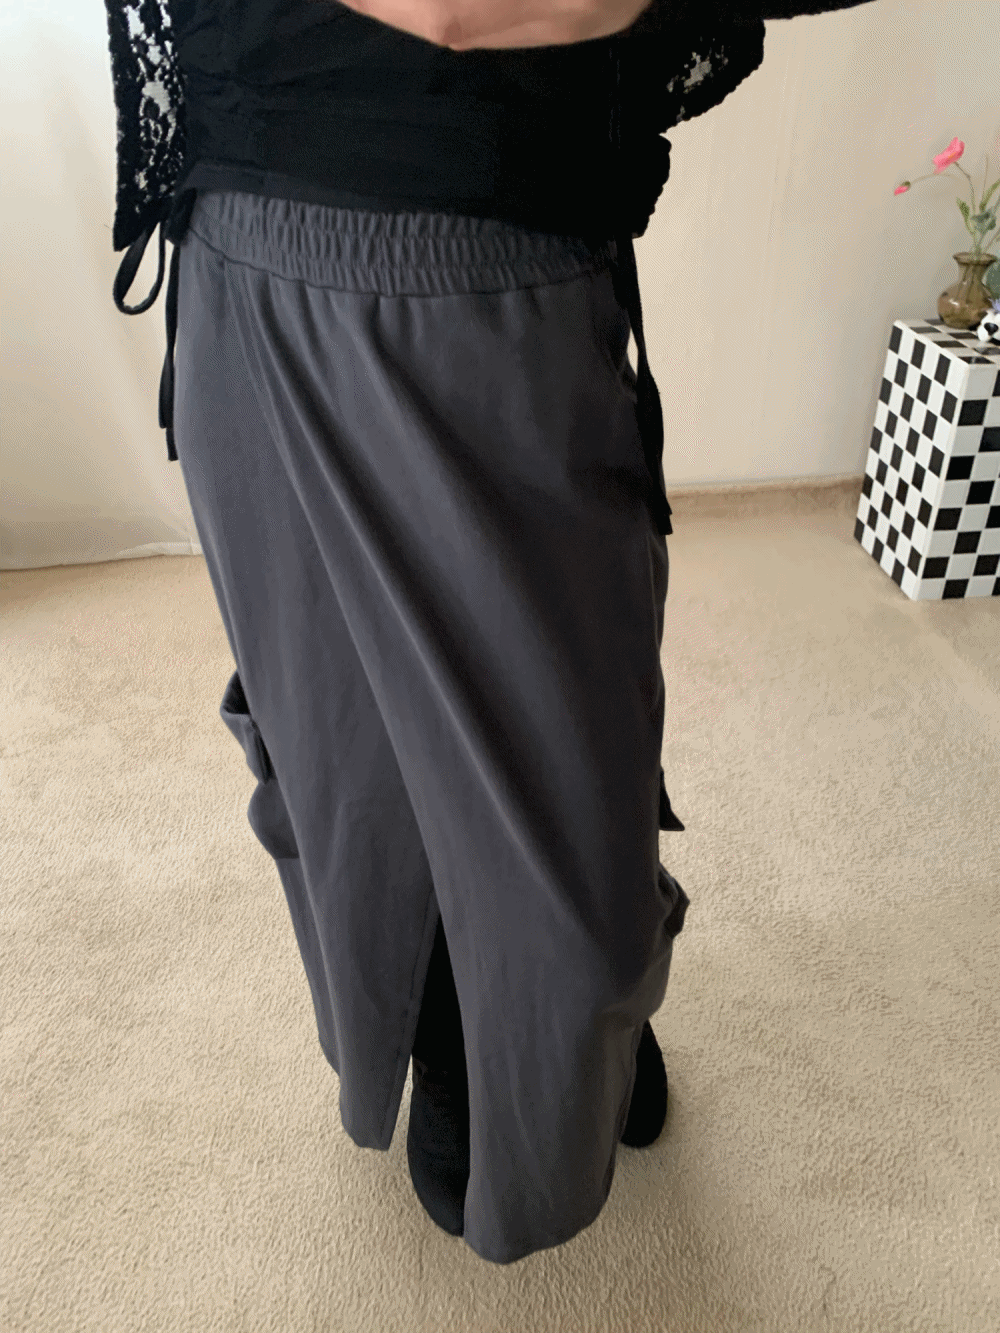 [Skirt] Tabitha maxi slit skirt / 3 colors